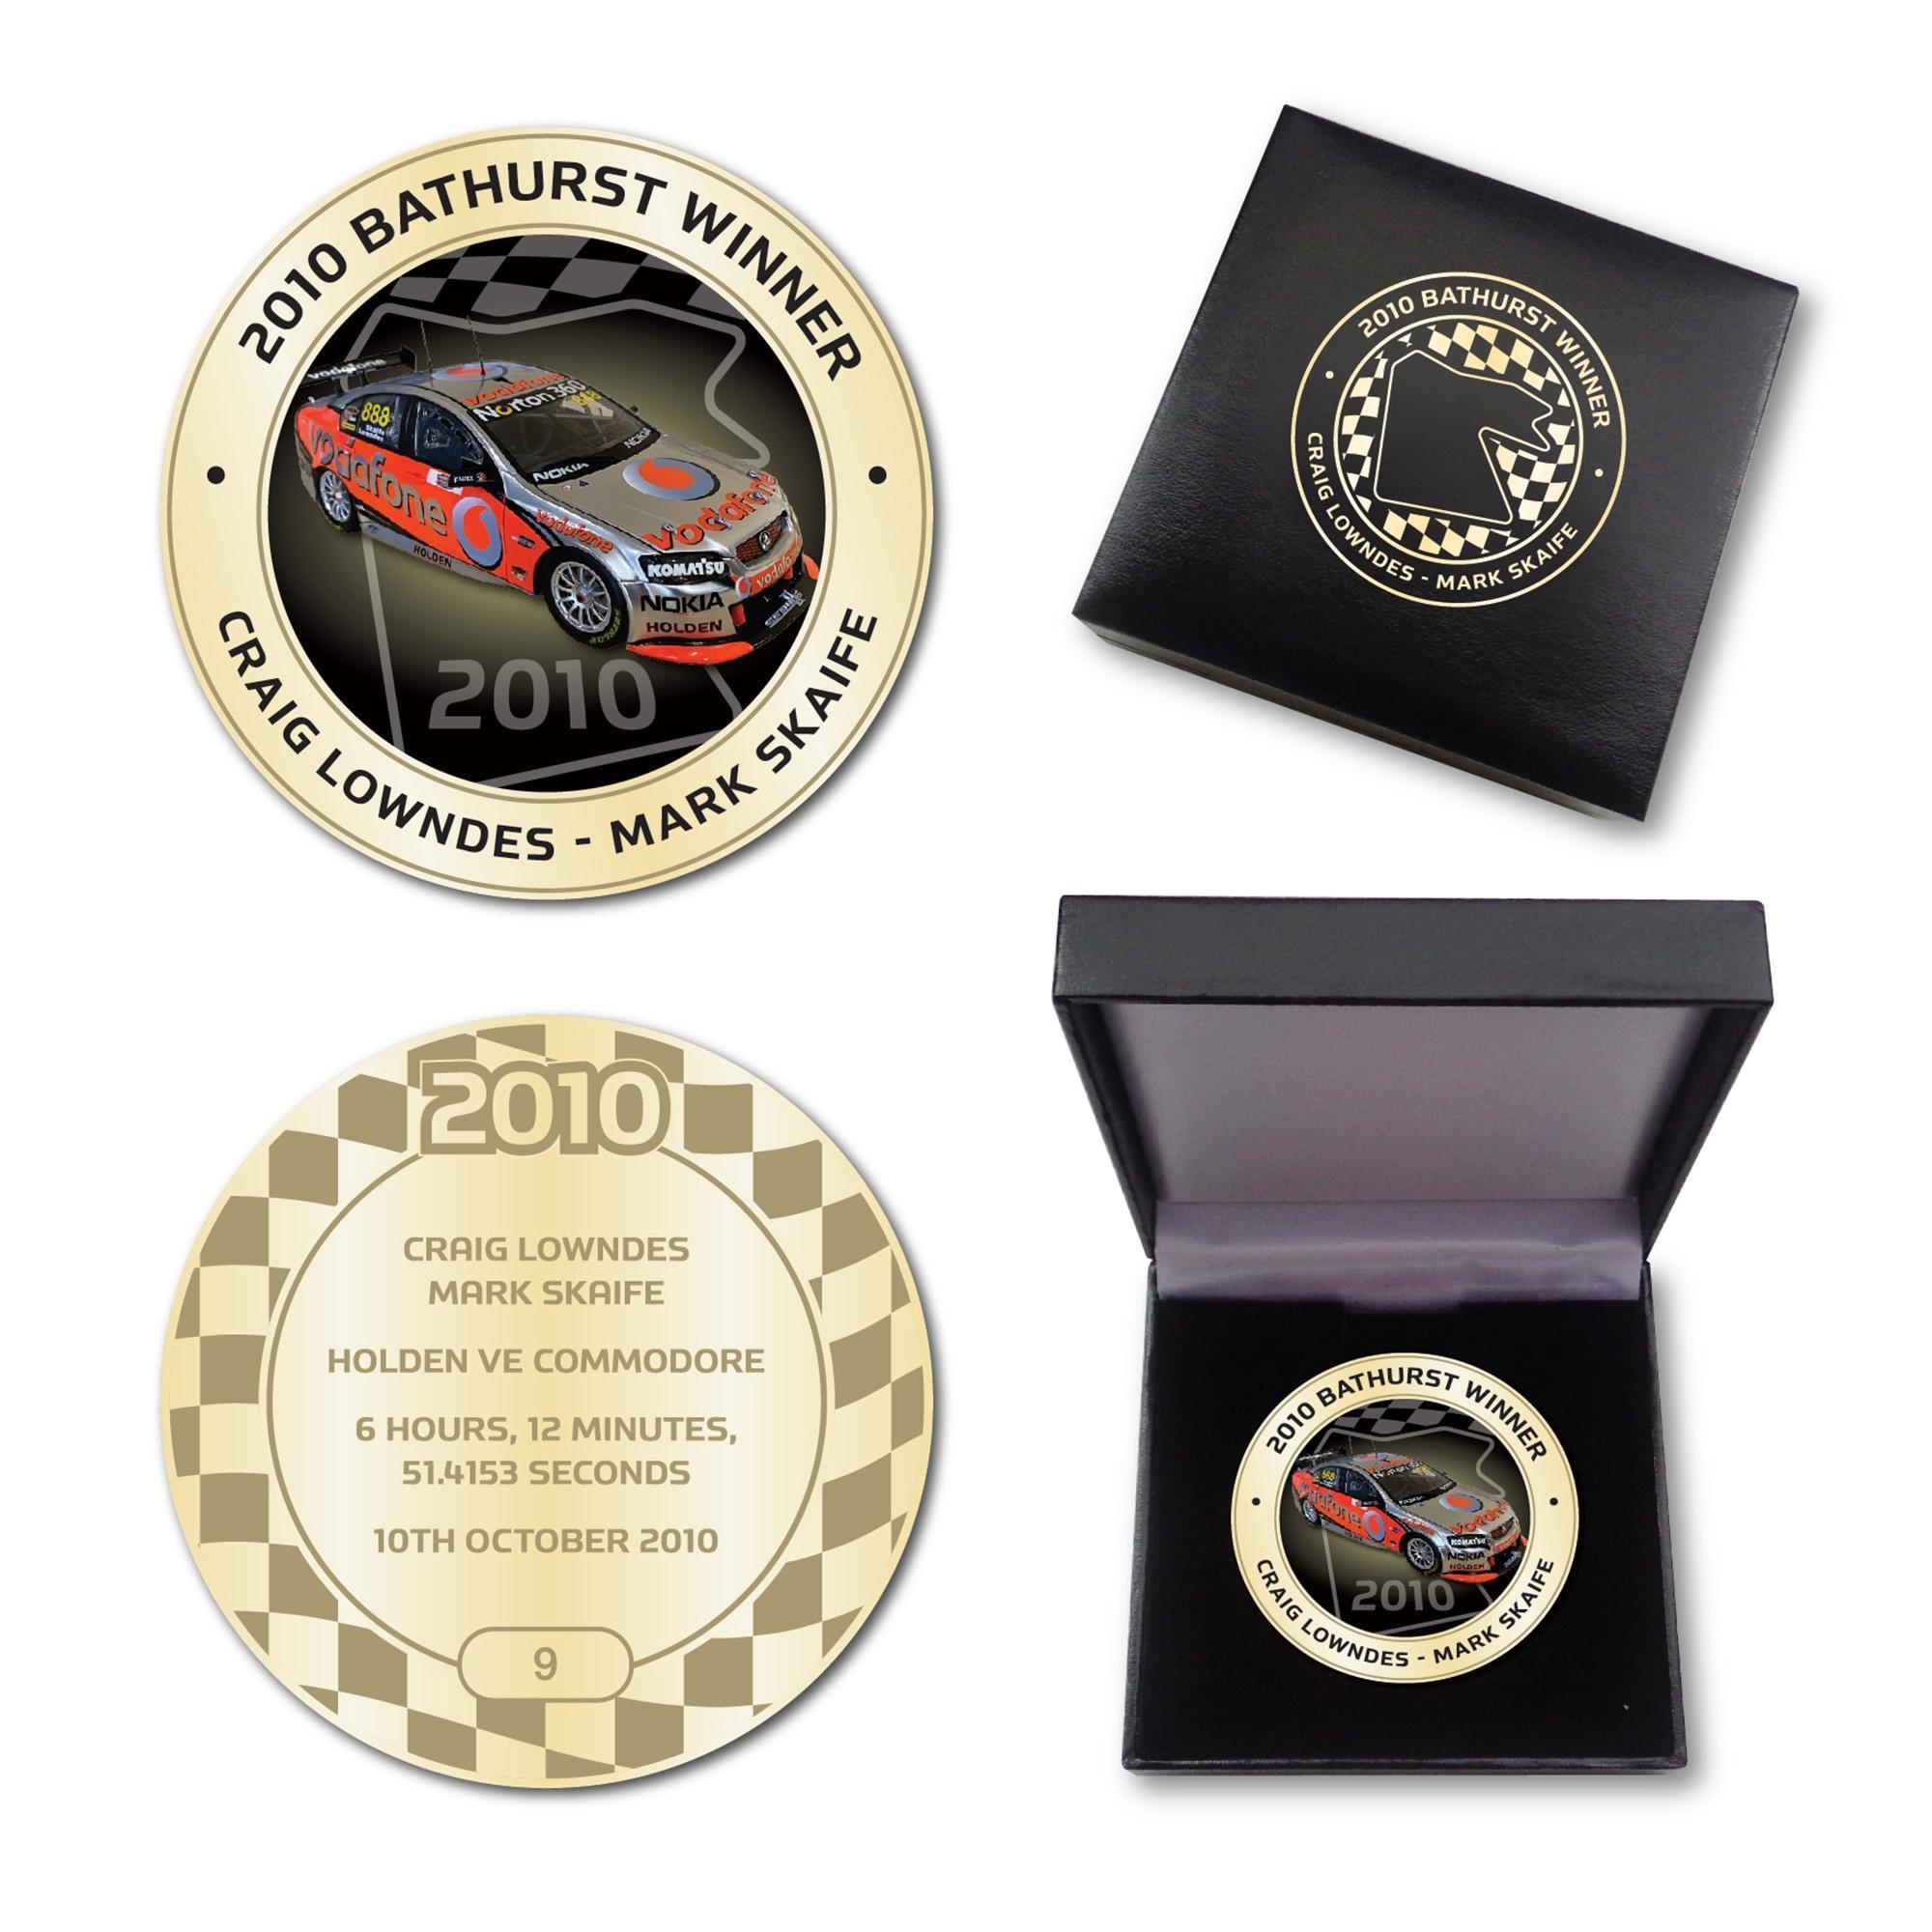 2010 Bathurst Winner Antique Gold Coloured Medallion In Box - Craig Lowndes Mark Skaife Holden VE Commodore